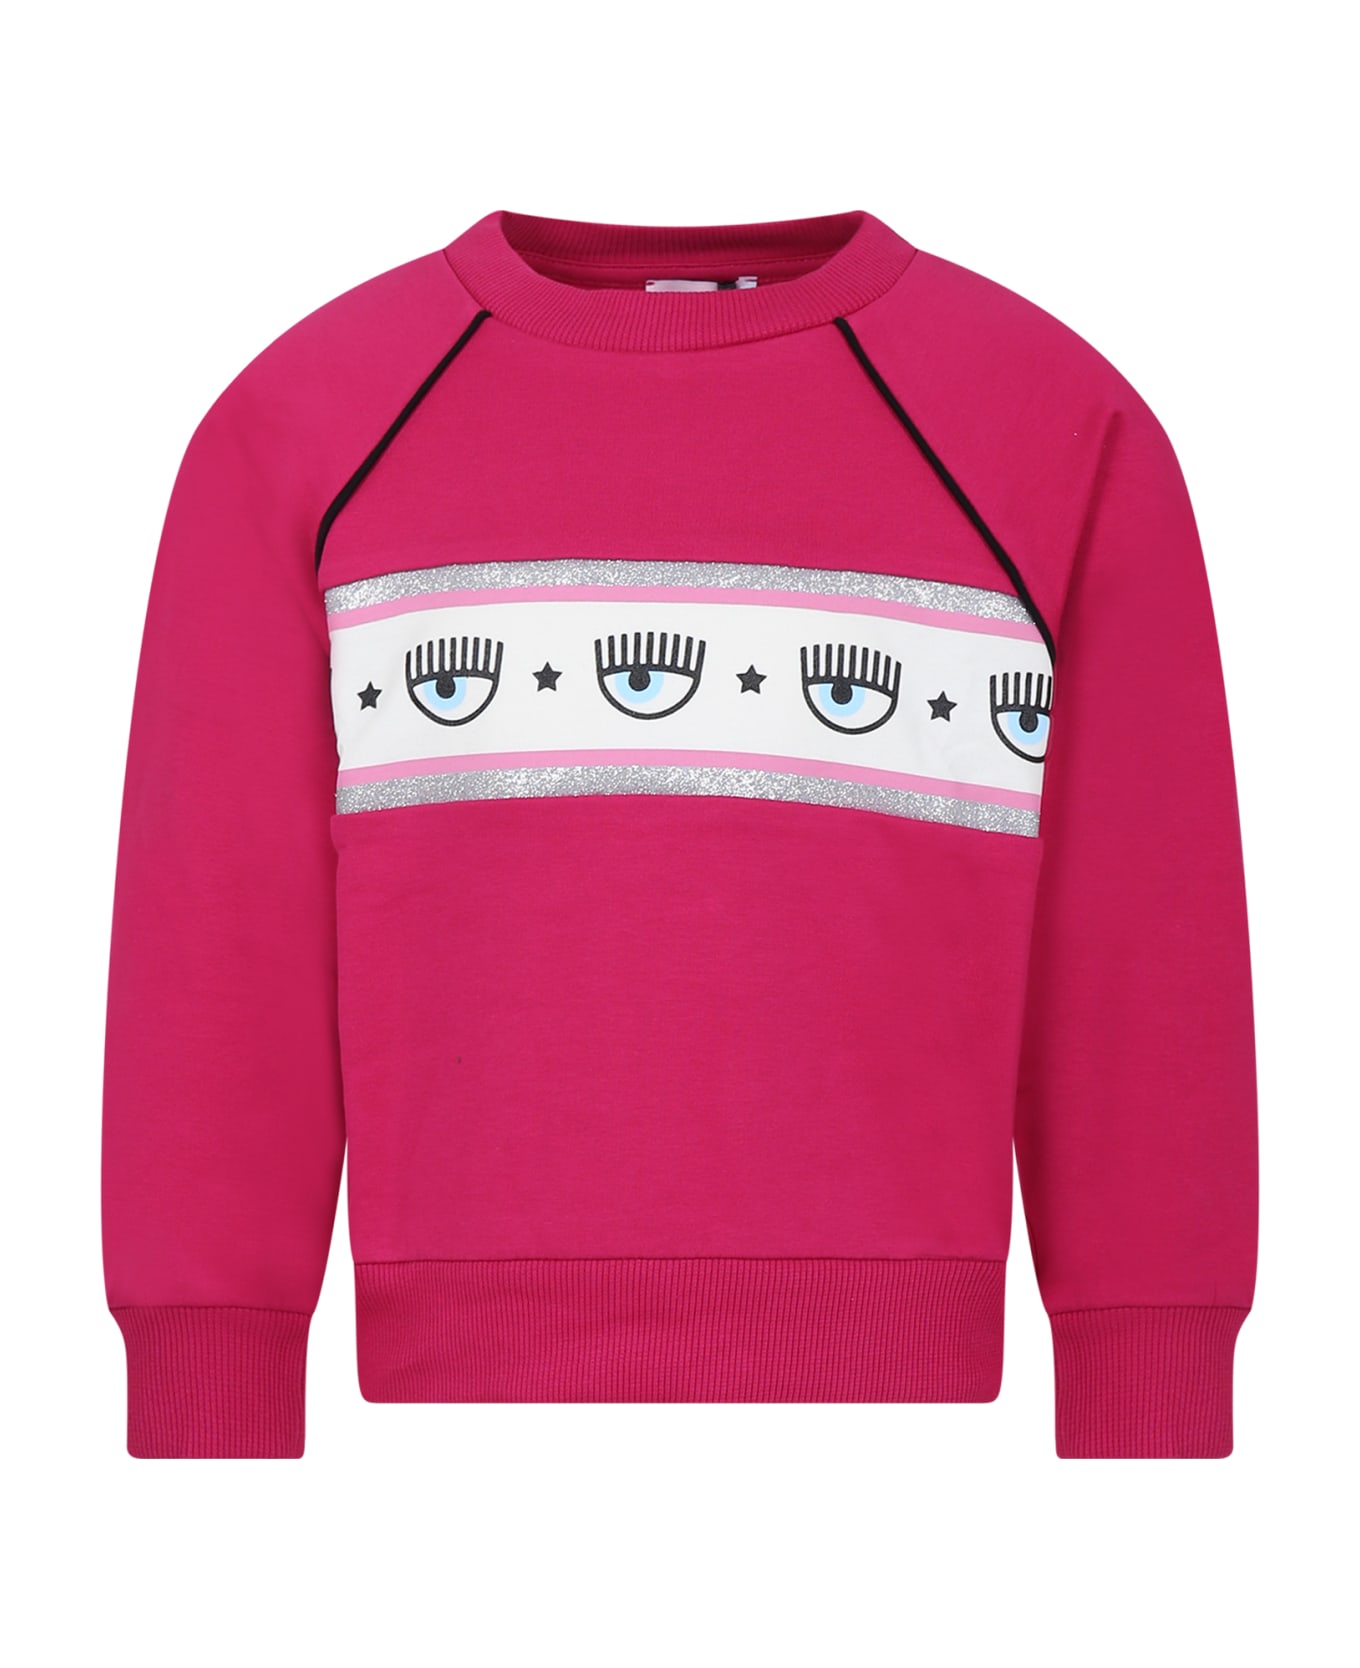 Chiara Ferragni Sweatshirt For Girl With Flirting Eyes - Fuchsia Red